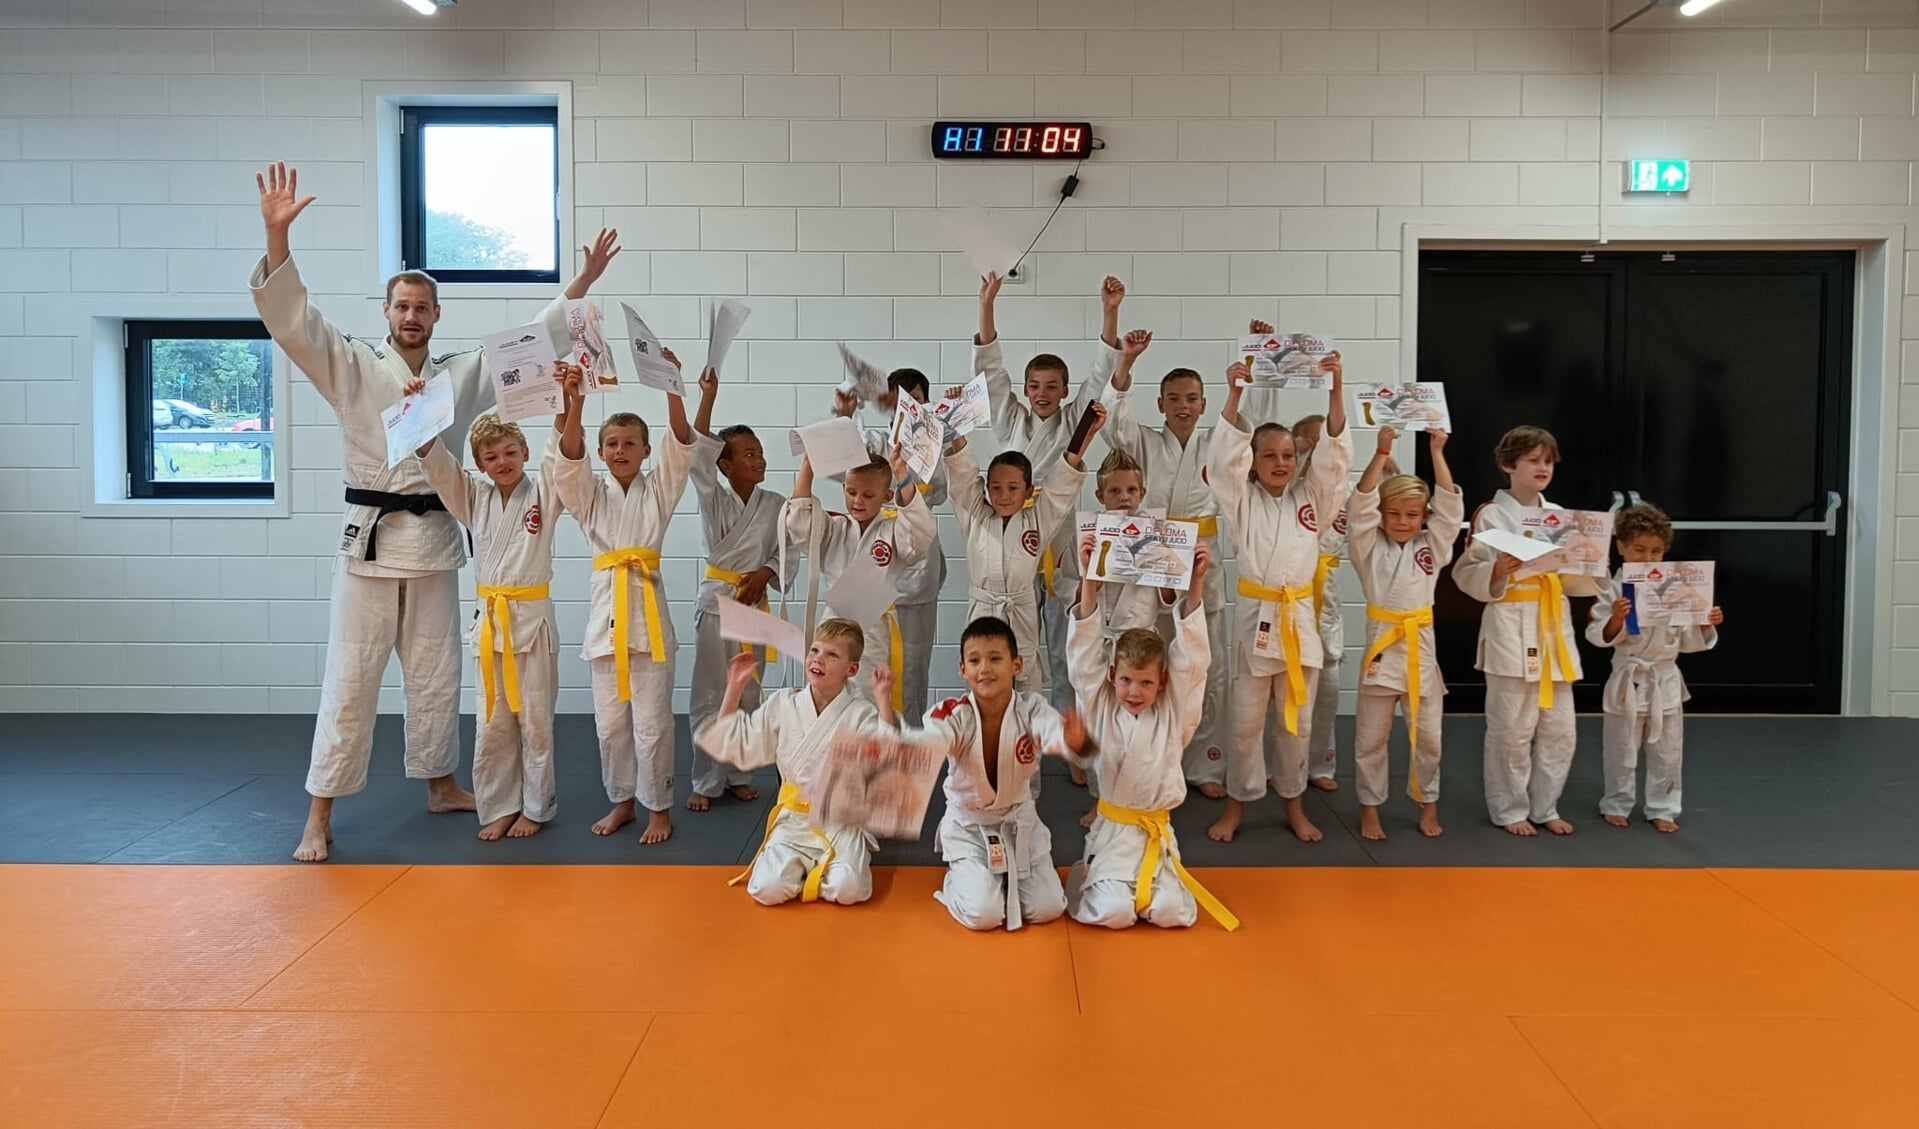 De judoka's van Judo 53 Graden Noord tonen trots hun slips en diploma's.